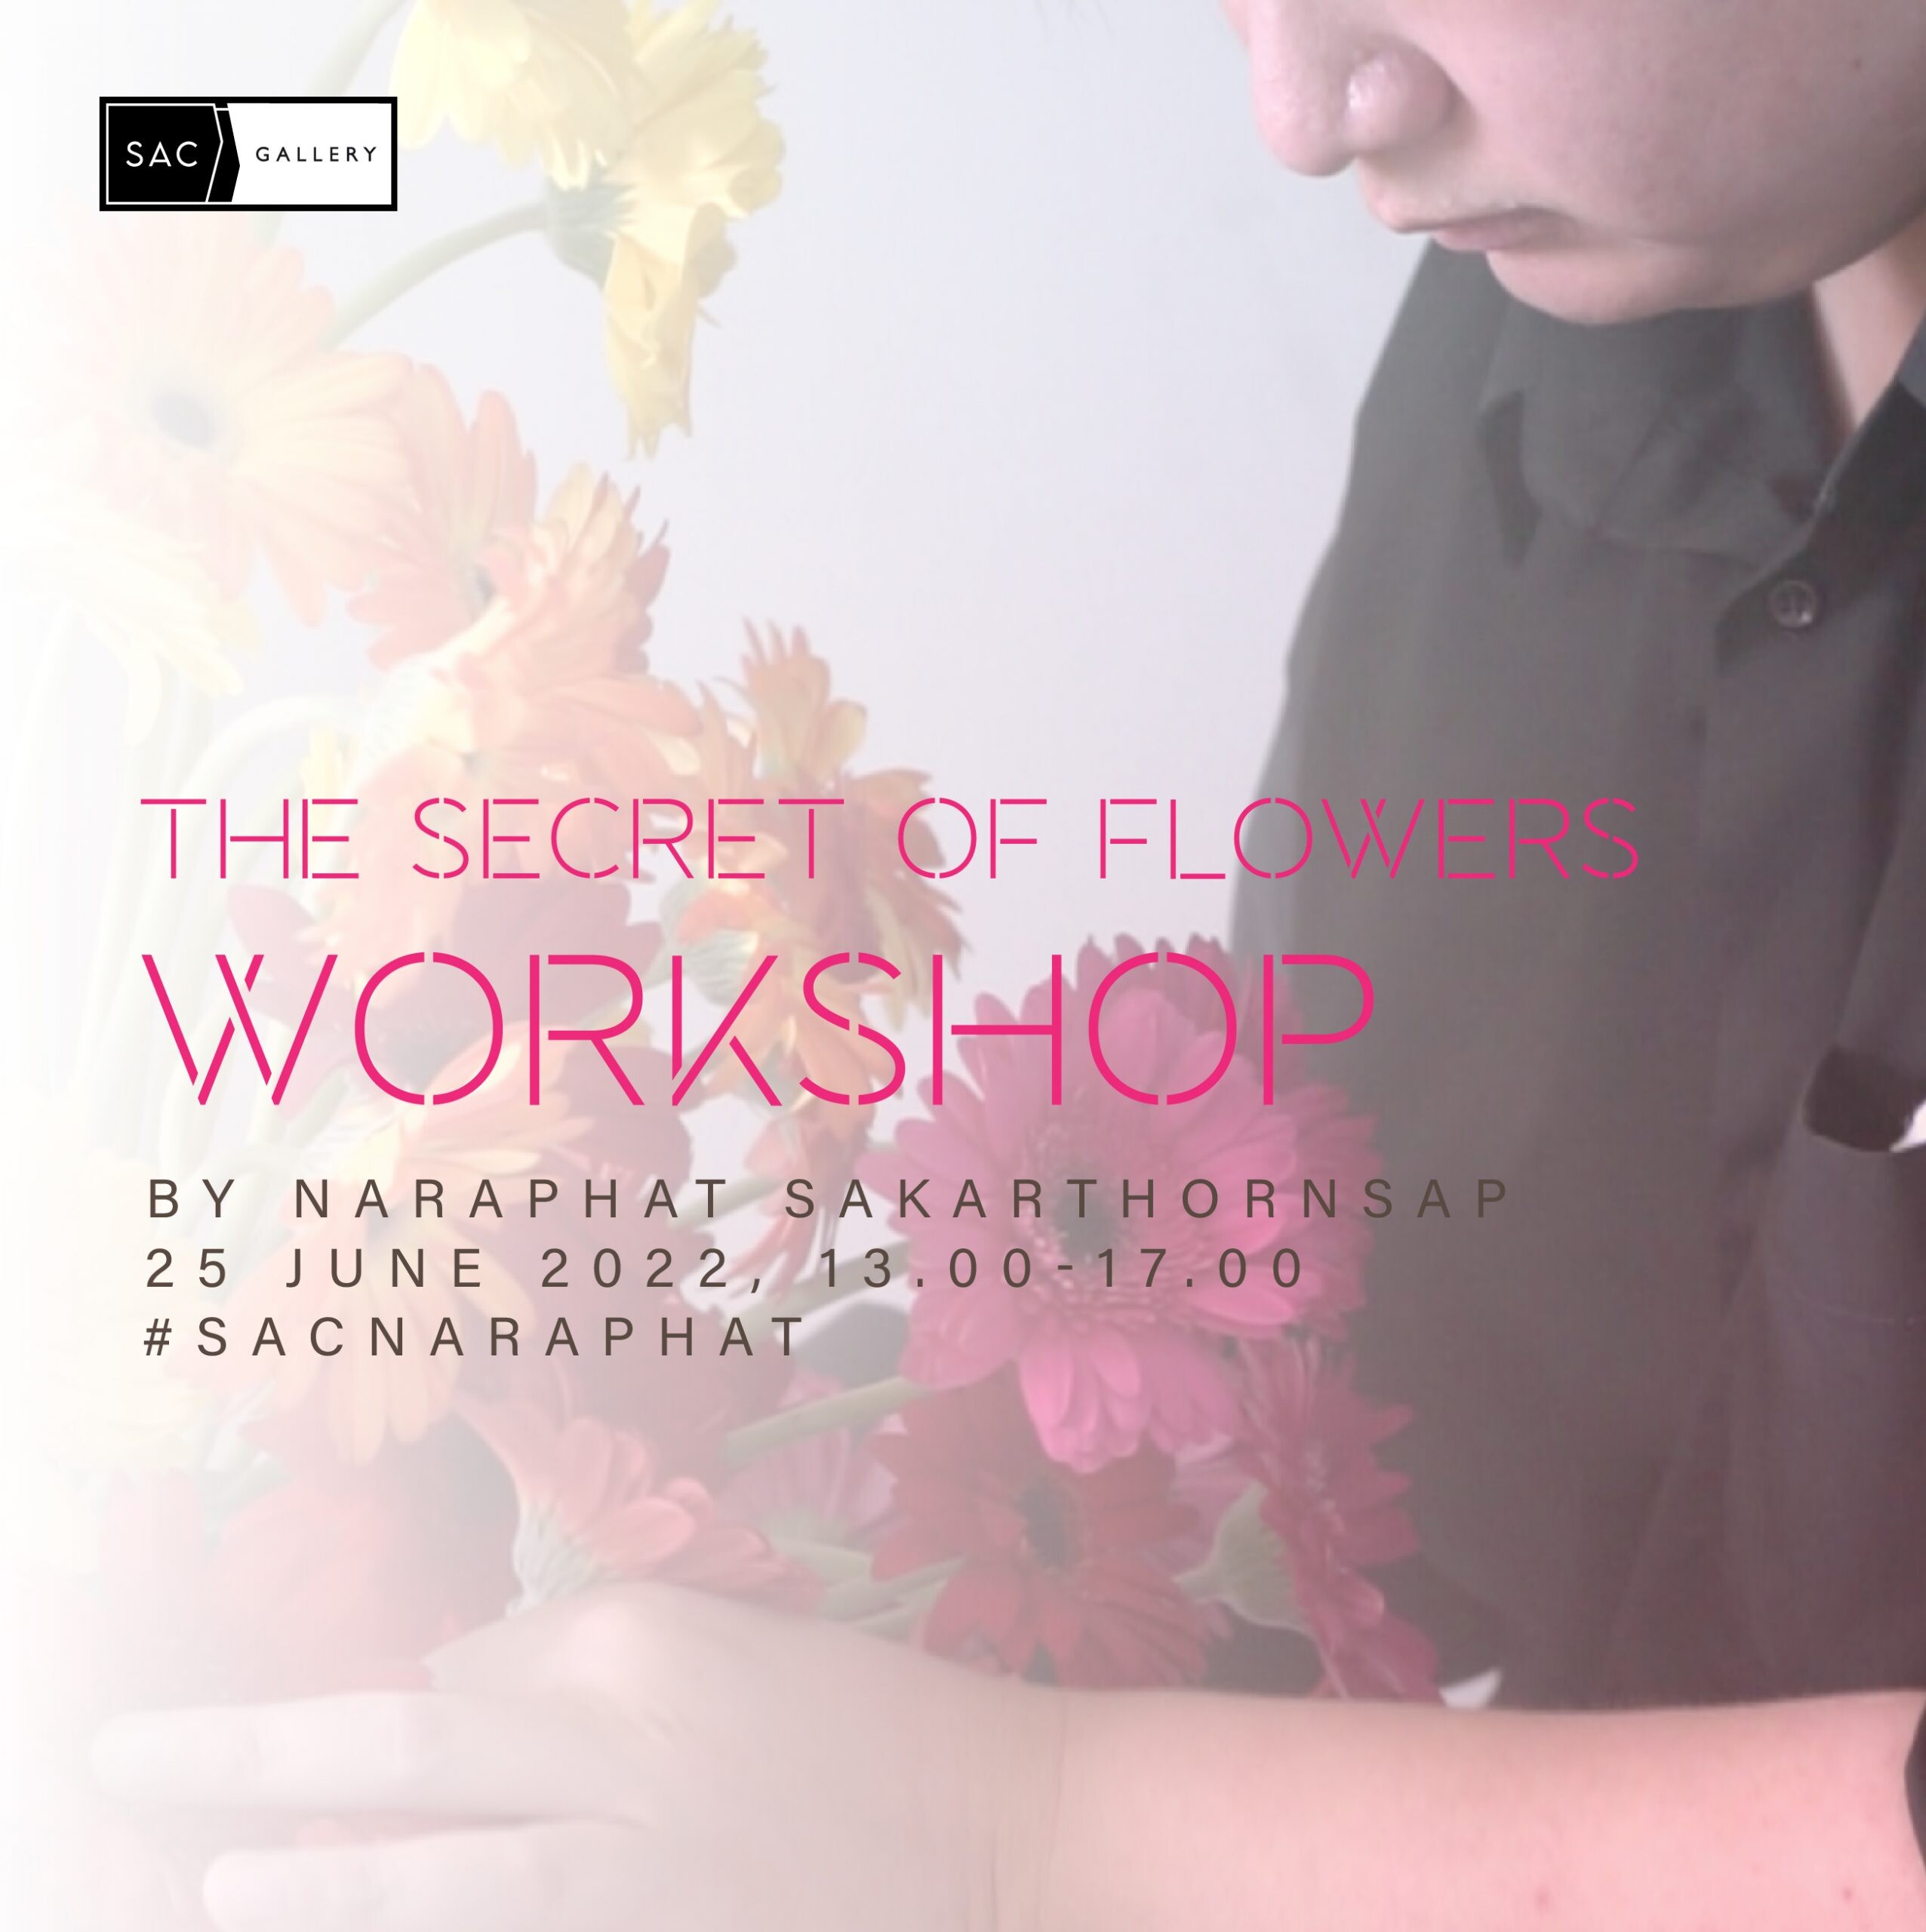 เอส เอ ซี แกลเลอรี (SAC Gallery) ขอเชิญทุกท่านร่วมกิจกรรมพิเศษ "The secret of flowers by Naraphat Sakarthornsap"